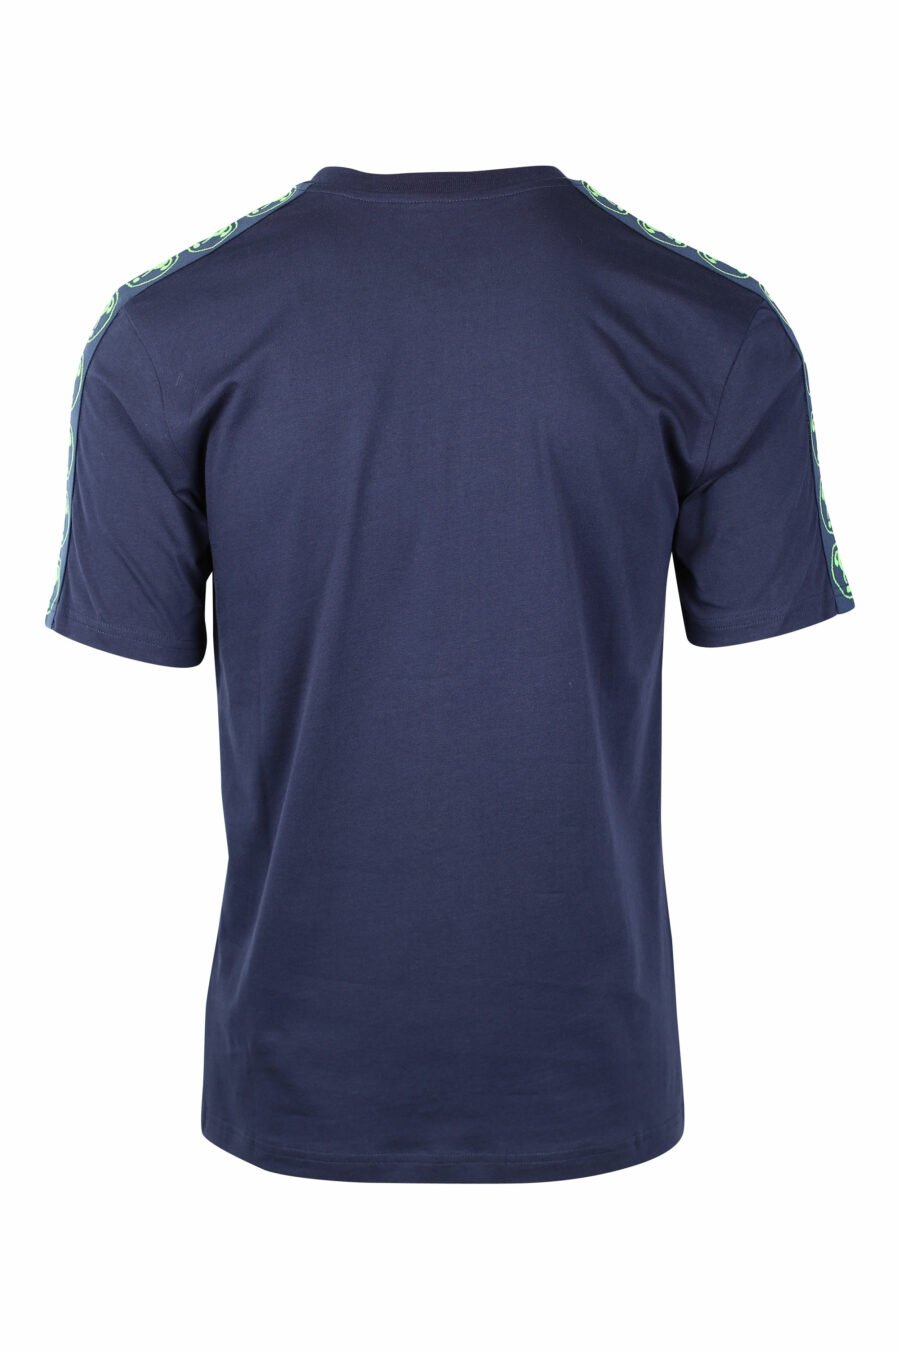 Camiseta azul oscura con minilogo doble pregunta en verde - IMG 1443